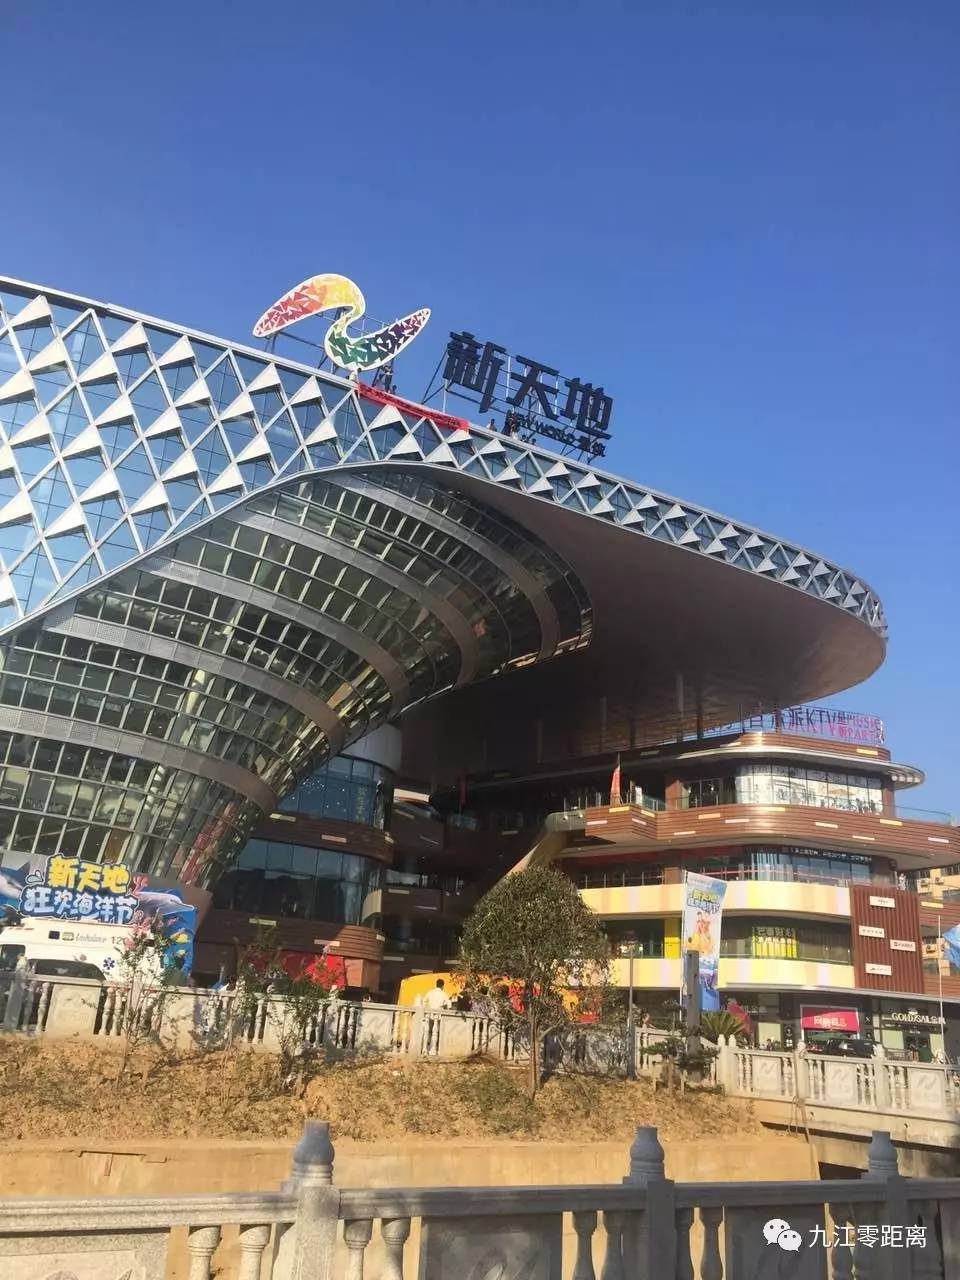 今天下午五二十左右,记者接到市民反映,说在濂溪区新天地购物中心有